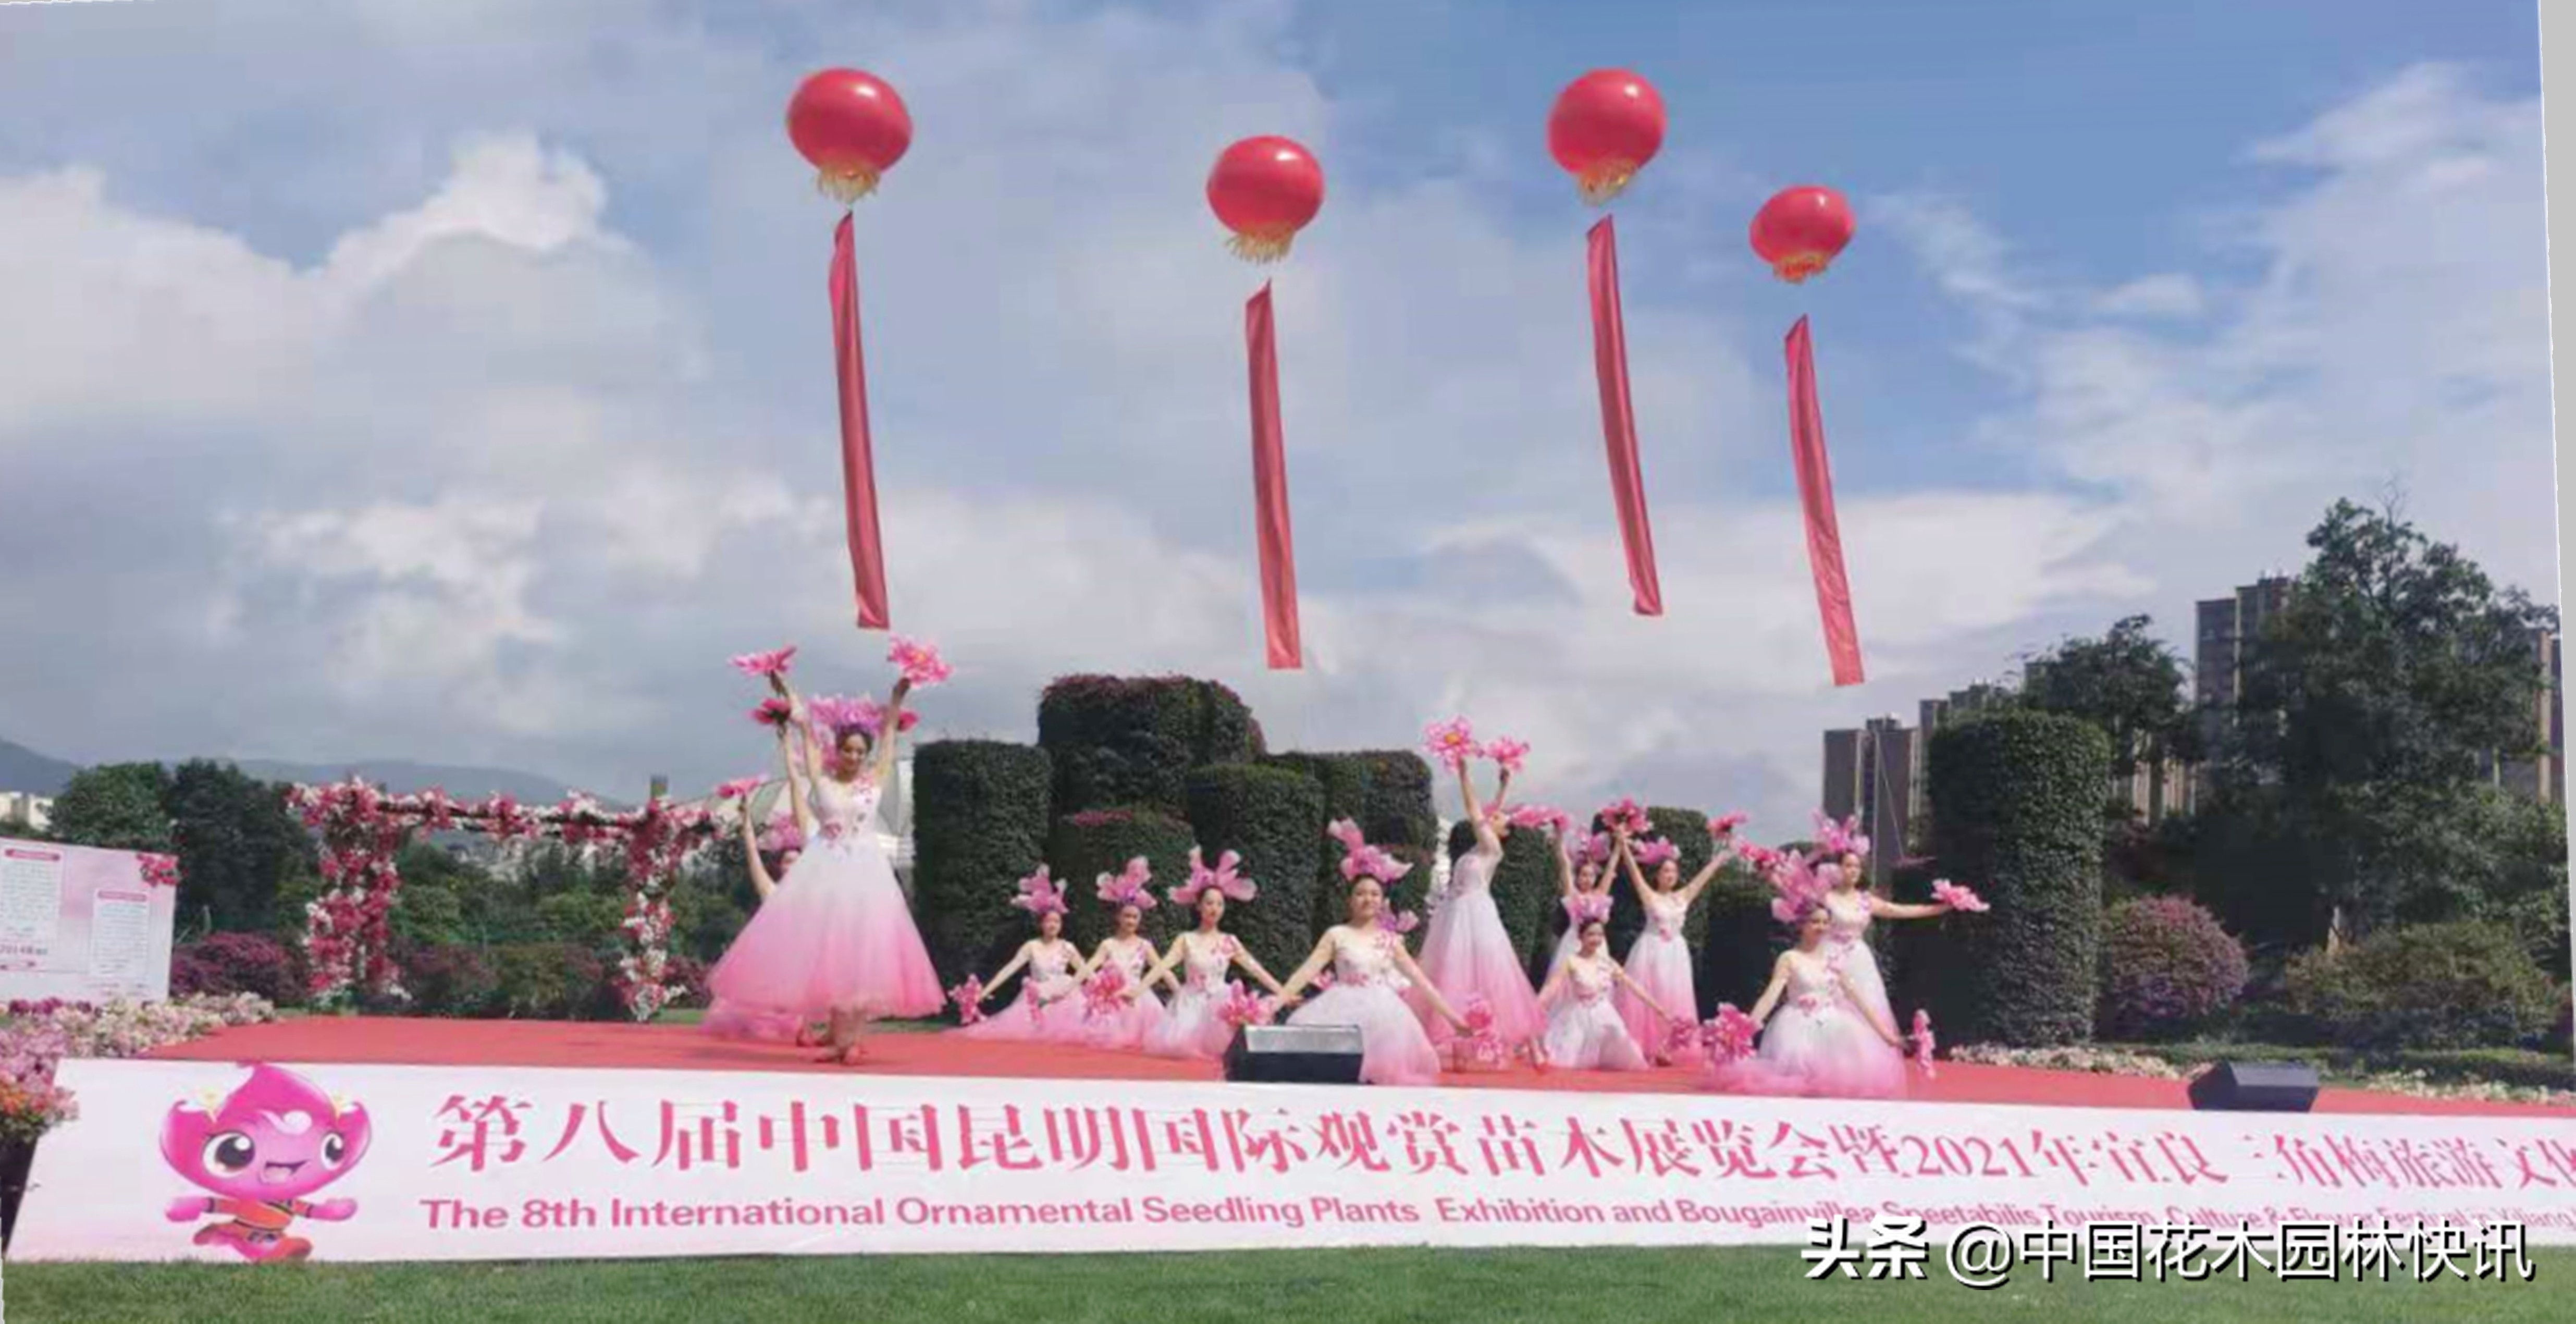 昆明宜良三角梅旅游文化花街节开幕：“路上花街”变“线上展示”